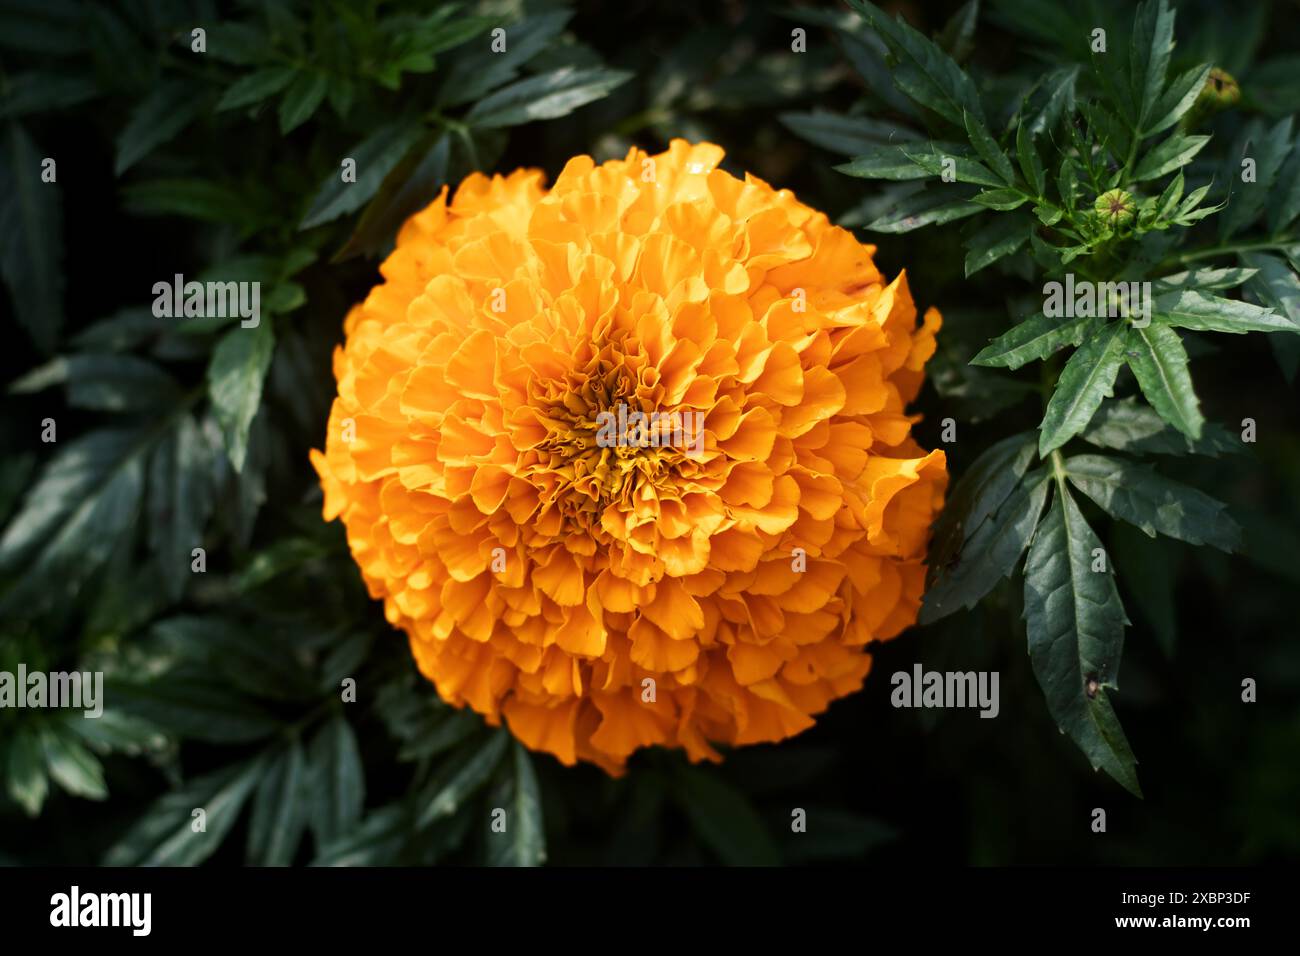 Les soucis sont des fleurs colorées et adaptables qui apportent beauté et utilité aux jardins et aux maisons. Marigold est la fleur la plus commune en Asie Banque D'Images